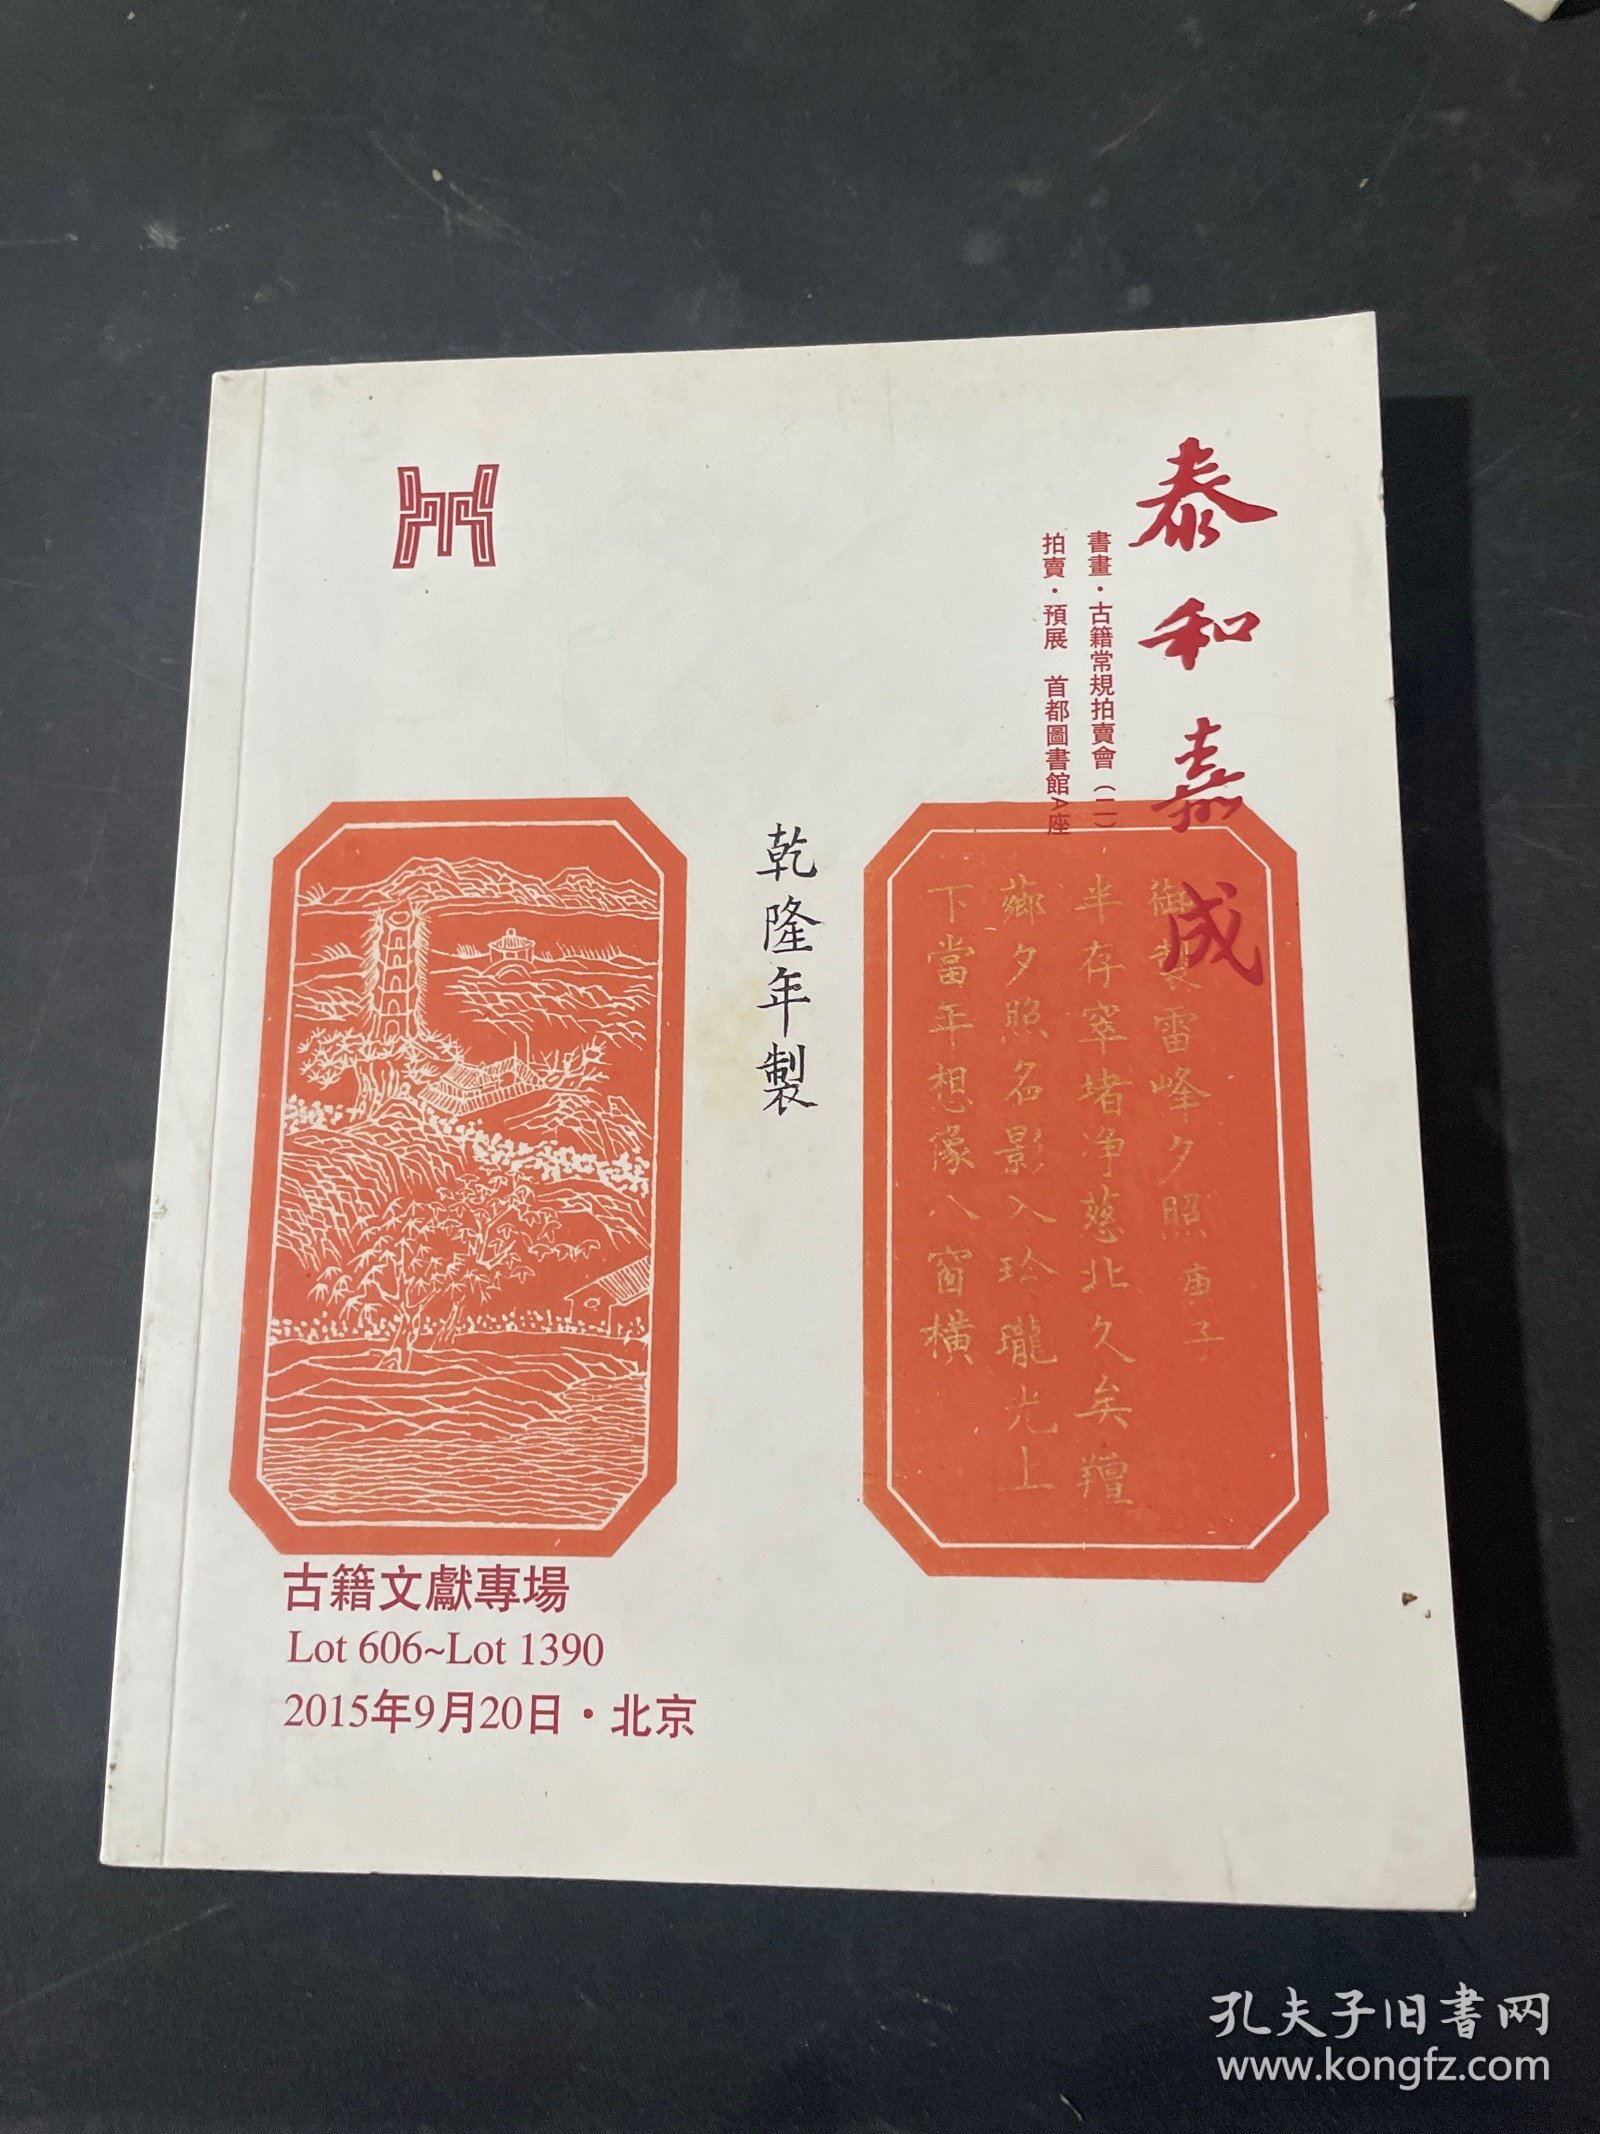 二0一五年泰和嘉成拍卖有限公司 古籍文献专场 2015年9月20日 北京 书画 古籍常规拍卖会